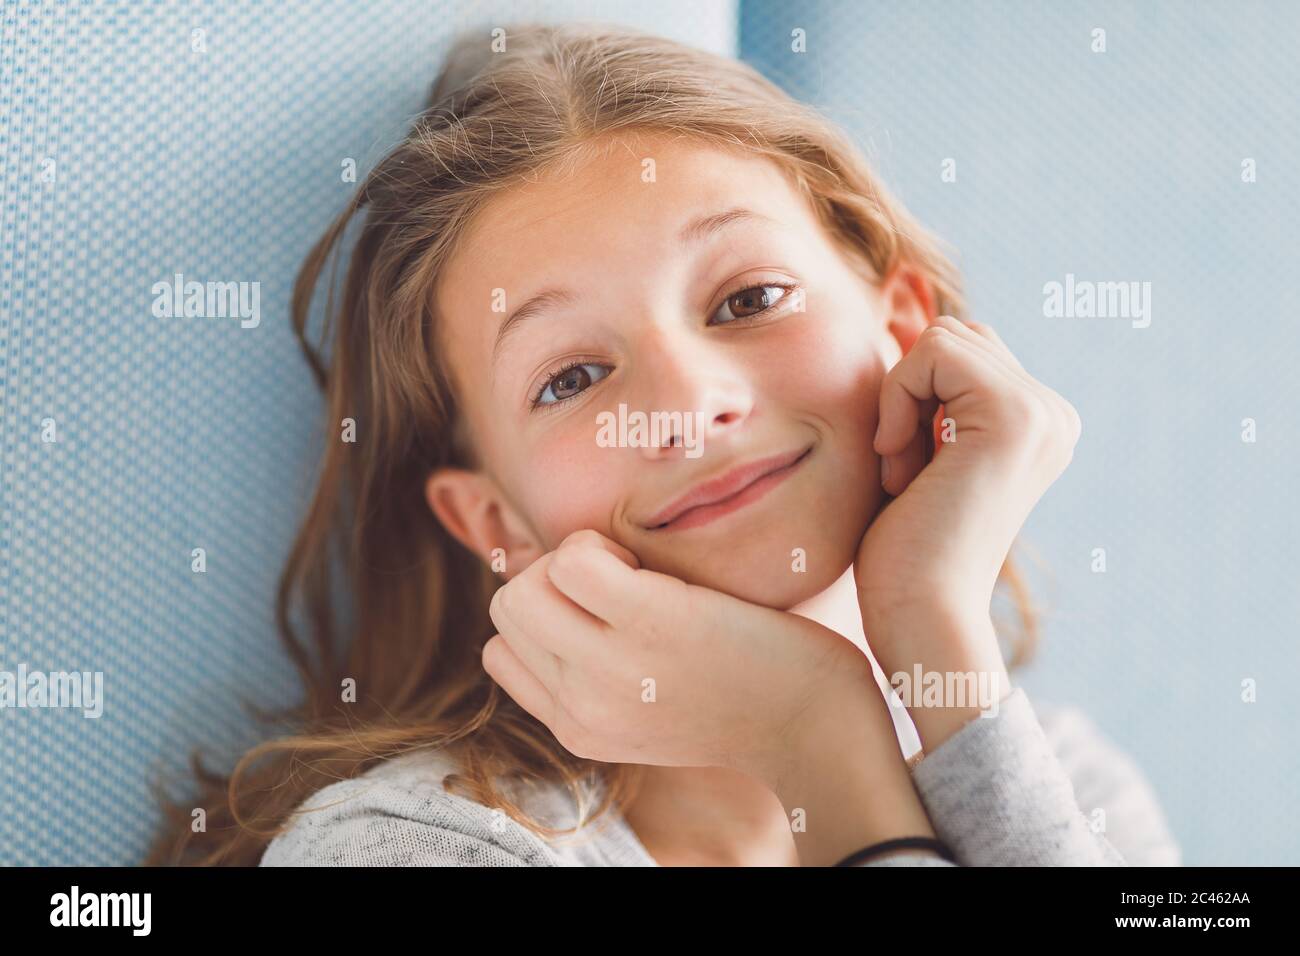 Ritratto luminoso e arioso di giovane ragazza sorridente davanti alla fotocamera su sfondo blu Foto Stock